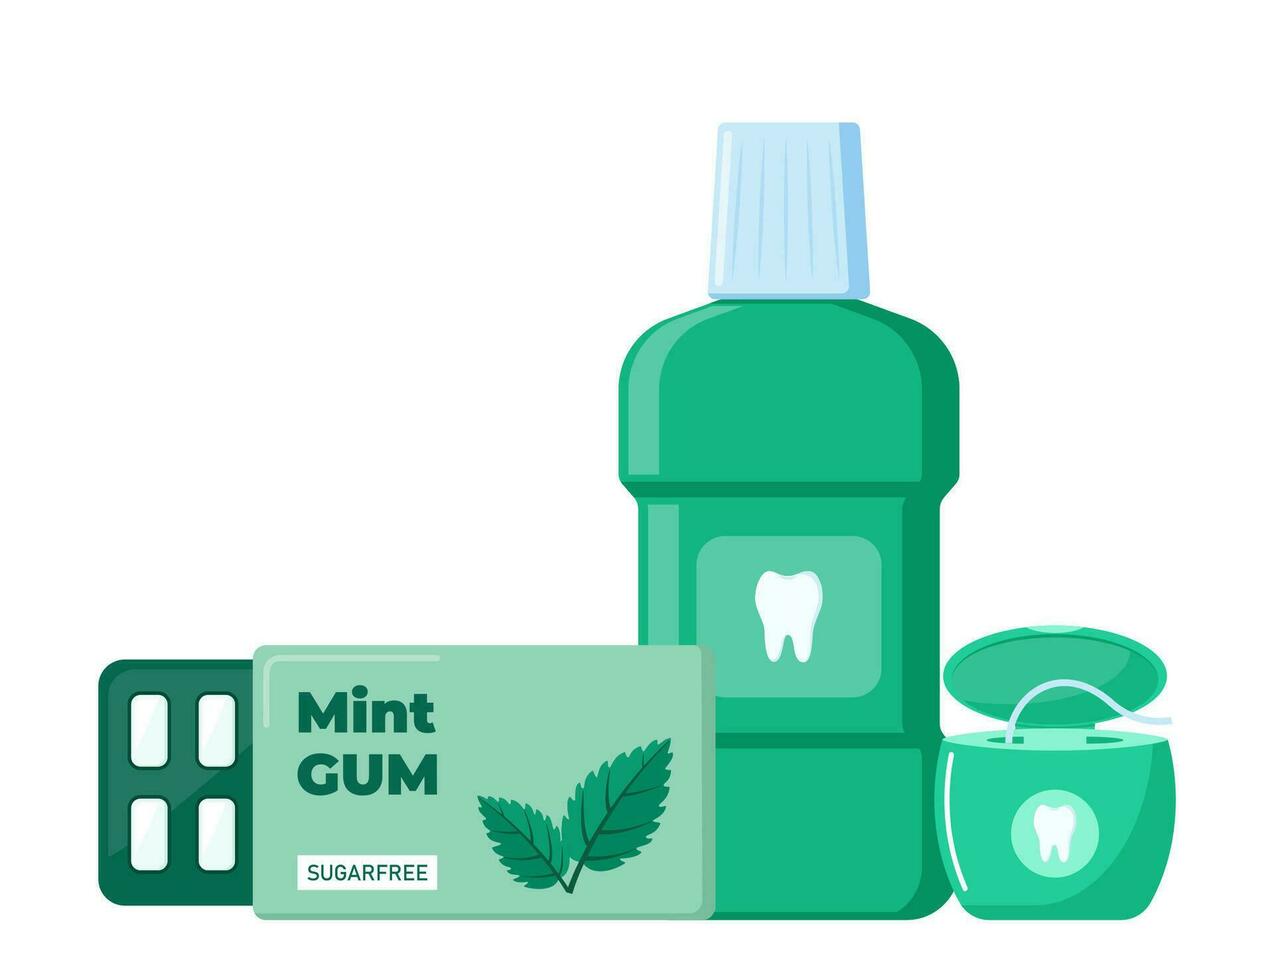 utensili e si intende per dentale igiene. orale cura e igiene prodotti. vettore illustrazione.